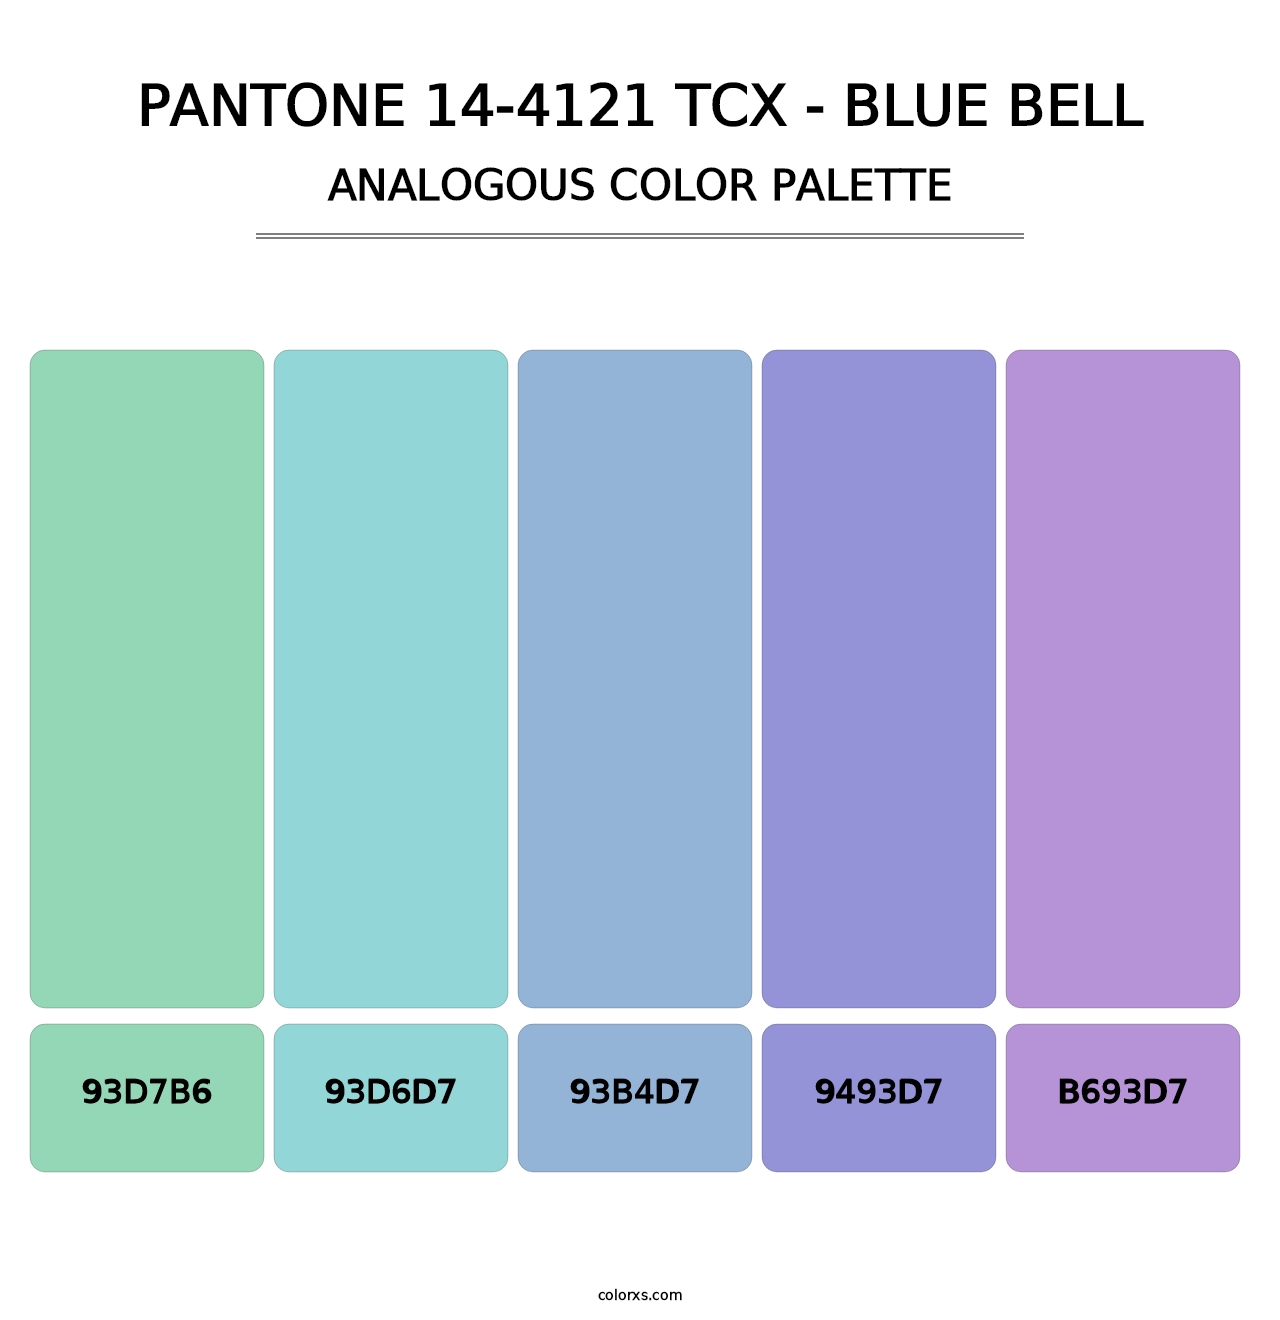 PANTONE 14-4121 TCX - Blue Bell - Analogous Color Palette